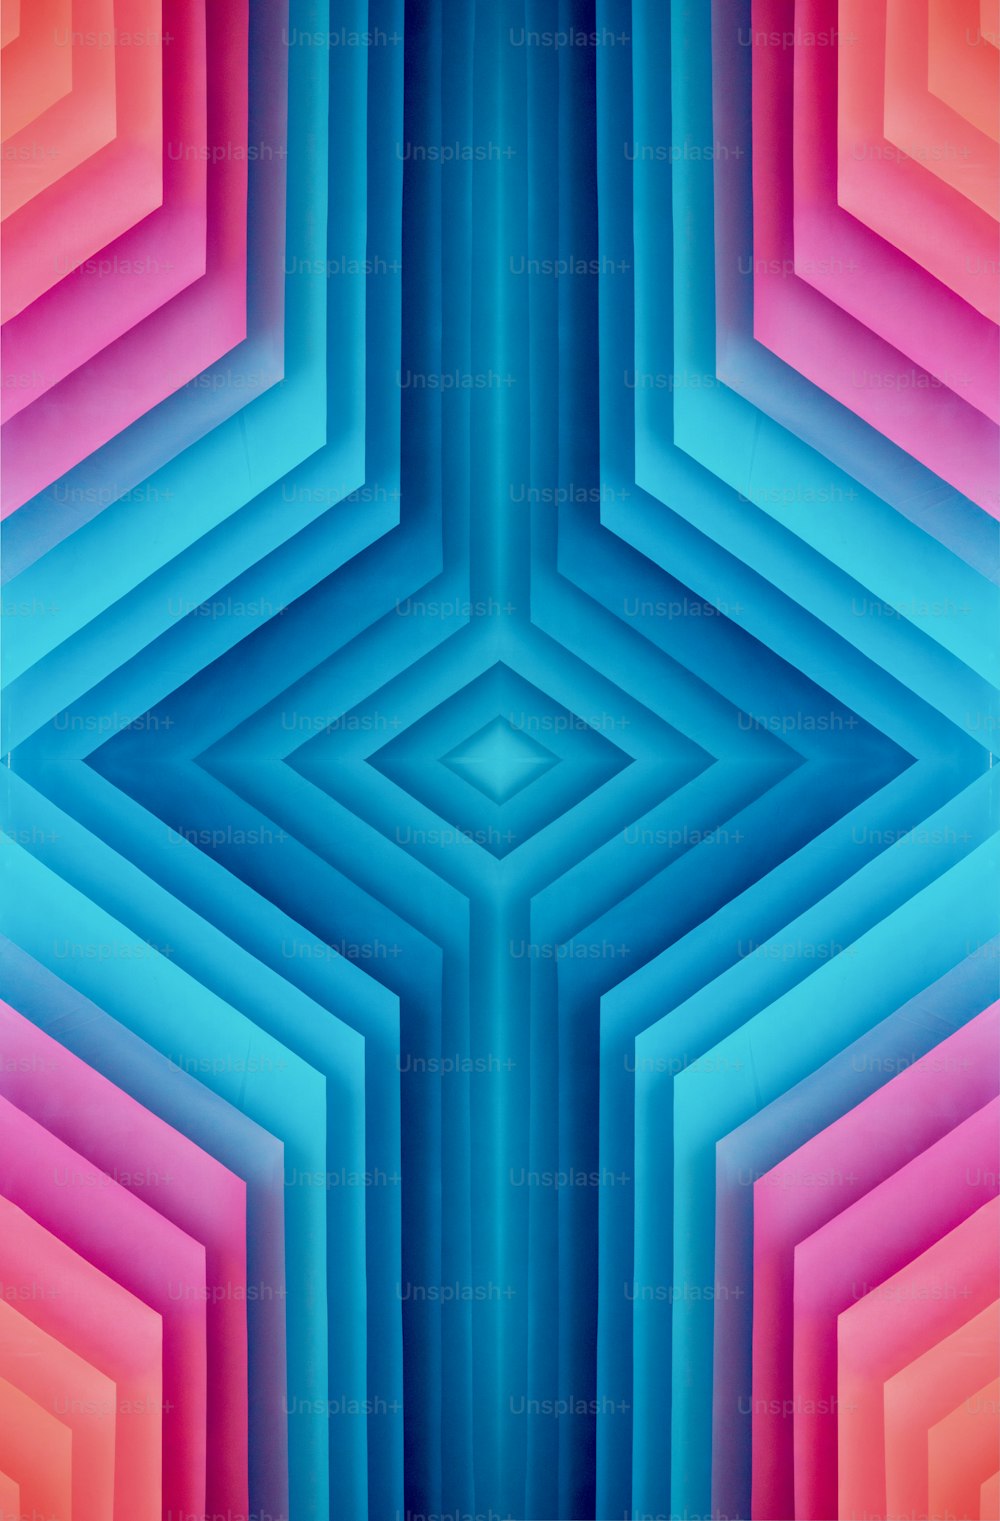 육각형 패턴이 있는 다채로운 추상적인 배경